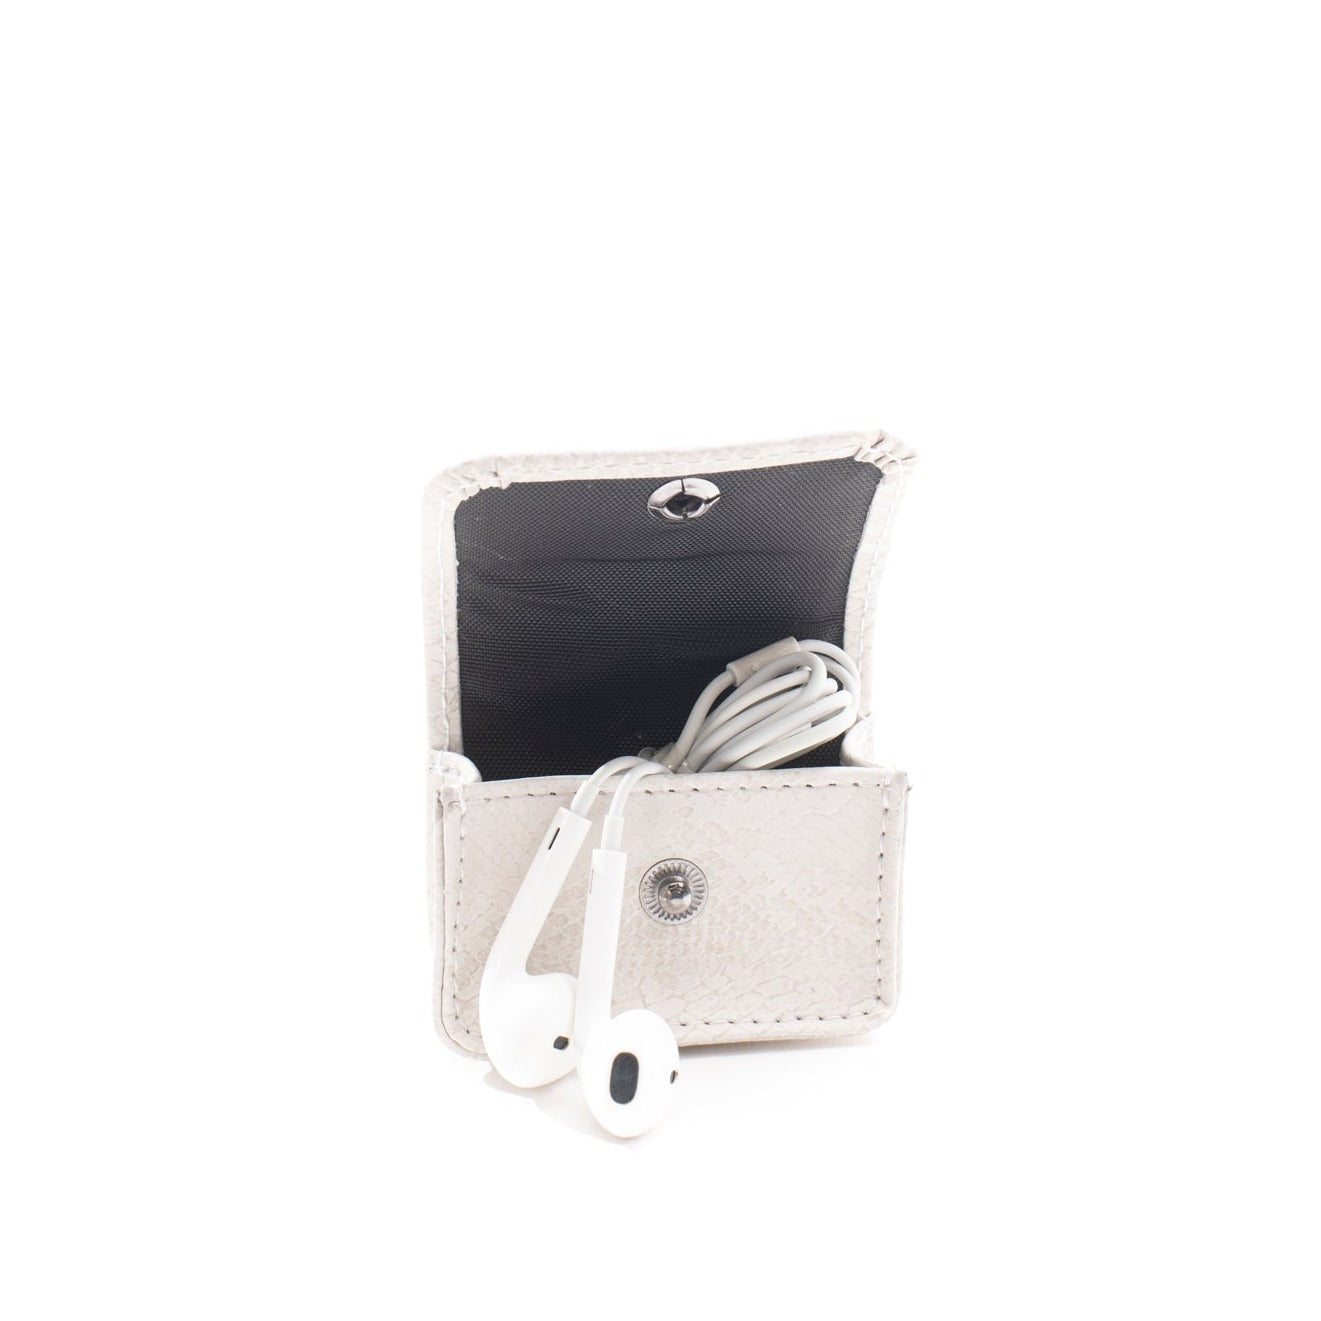 Earbud Pro Case - Ivory (white) Faux Snake - Gunmetal Toned Hardware